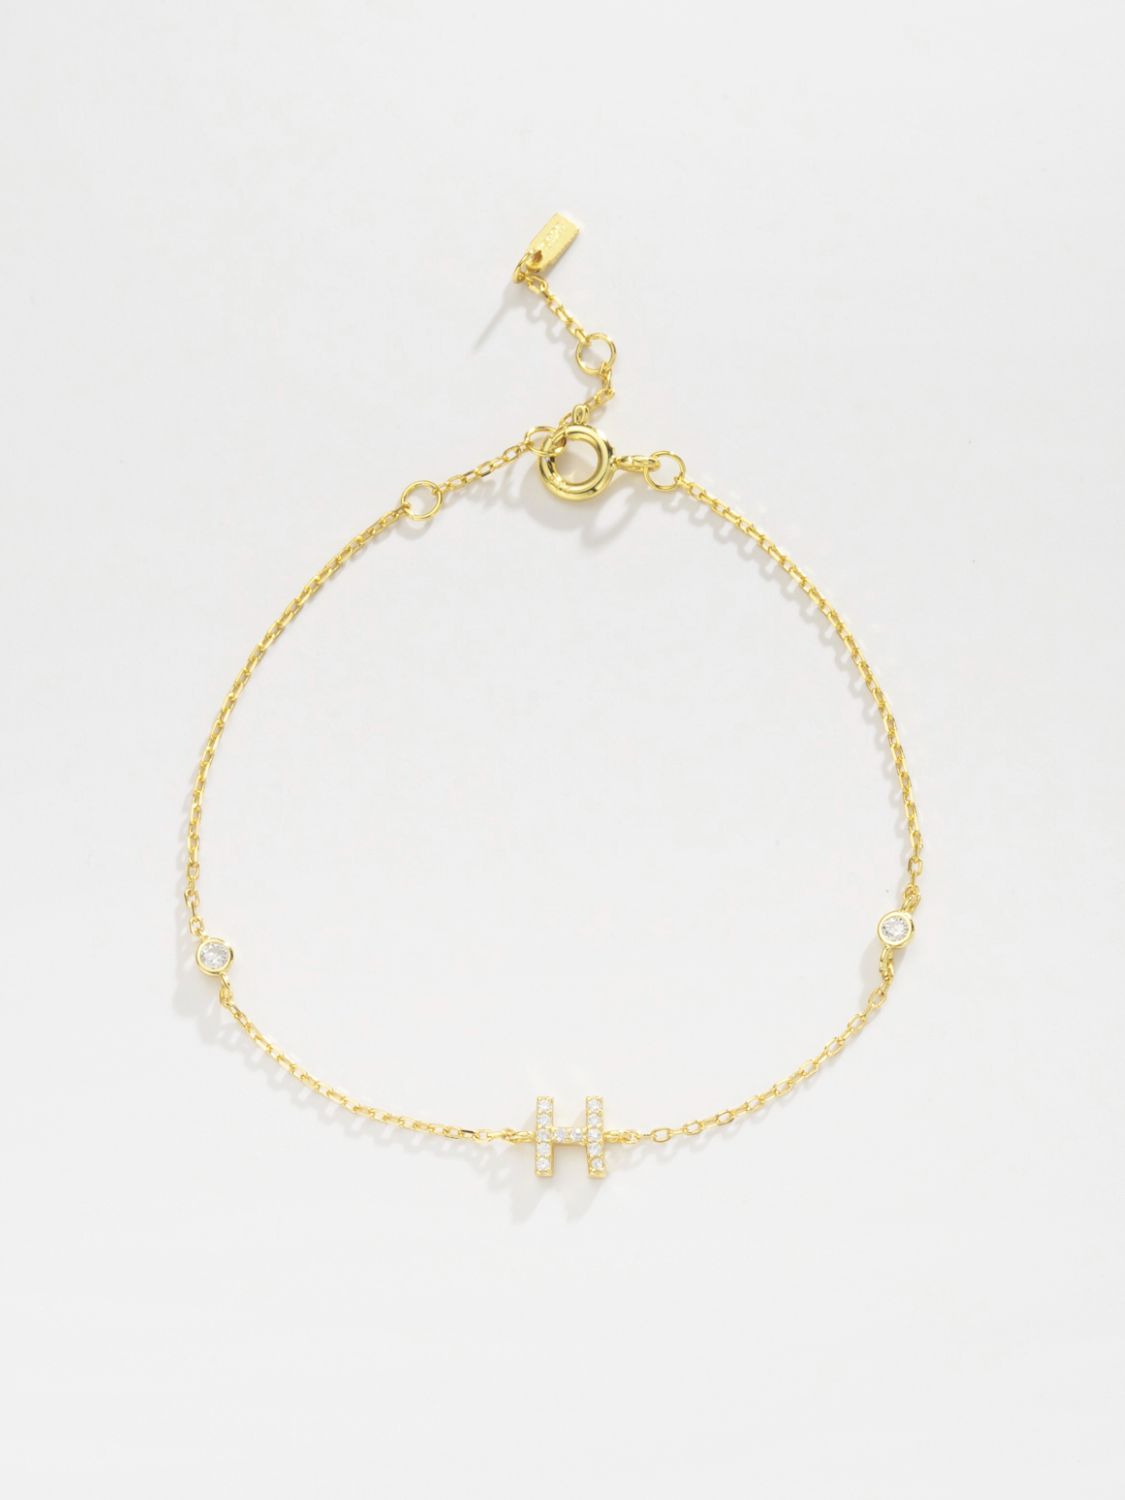 Zircon 925 Sterling Silver Bracelet - Women’s Jewelry - Bracelets - 9 - 2024